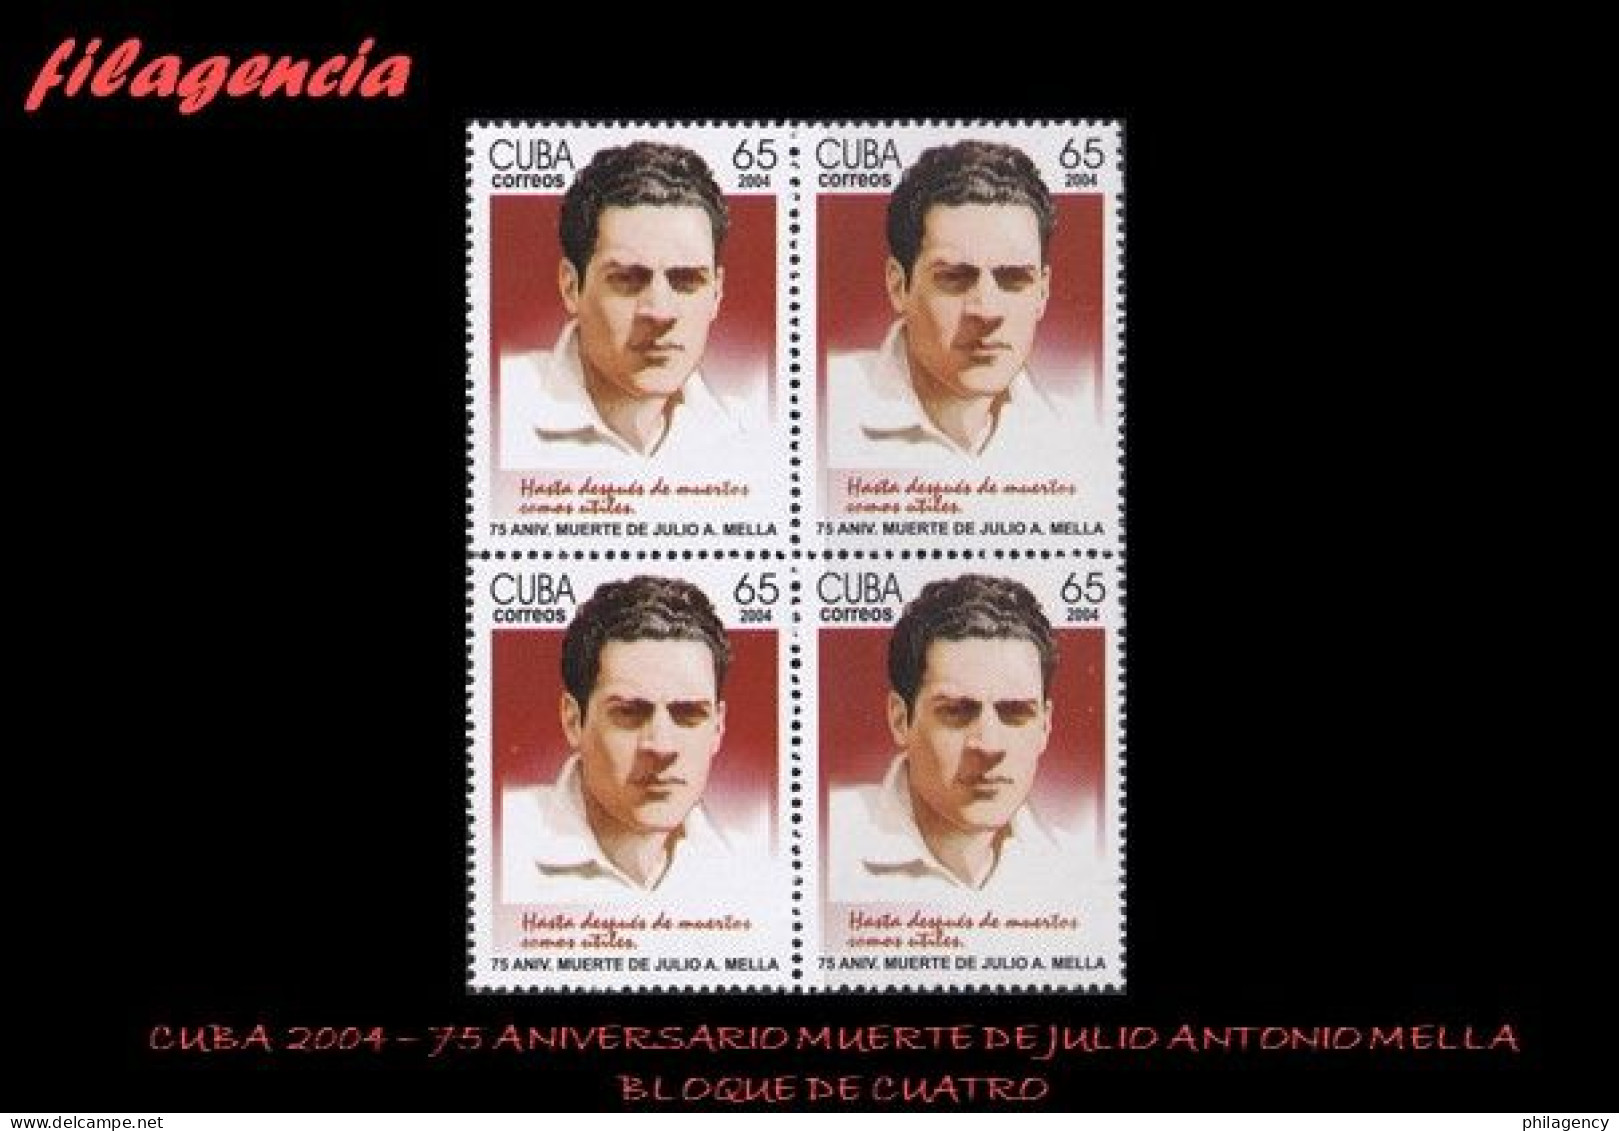 CUBA. BLOQUES DE CUATRO. 2004-05 75 ANIVERSARIO DE LA MUERTE DE JULIO ANTONIO MELLA. LÍDER ESTUDIANTIL - Unused Stamps